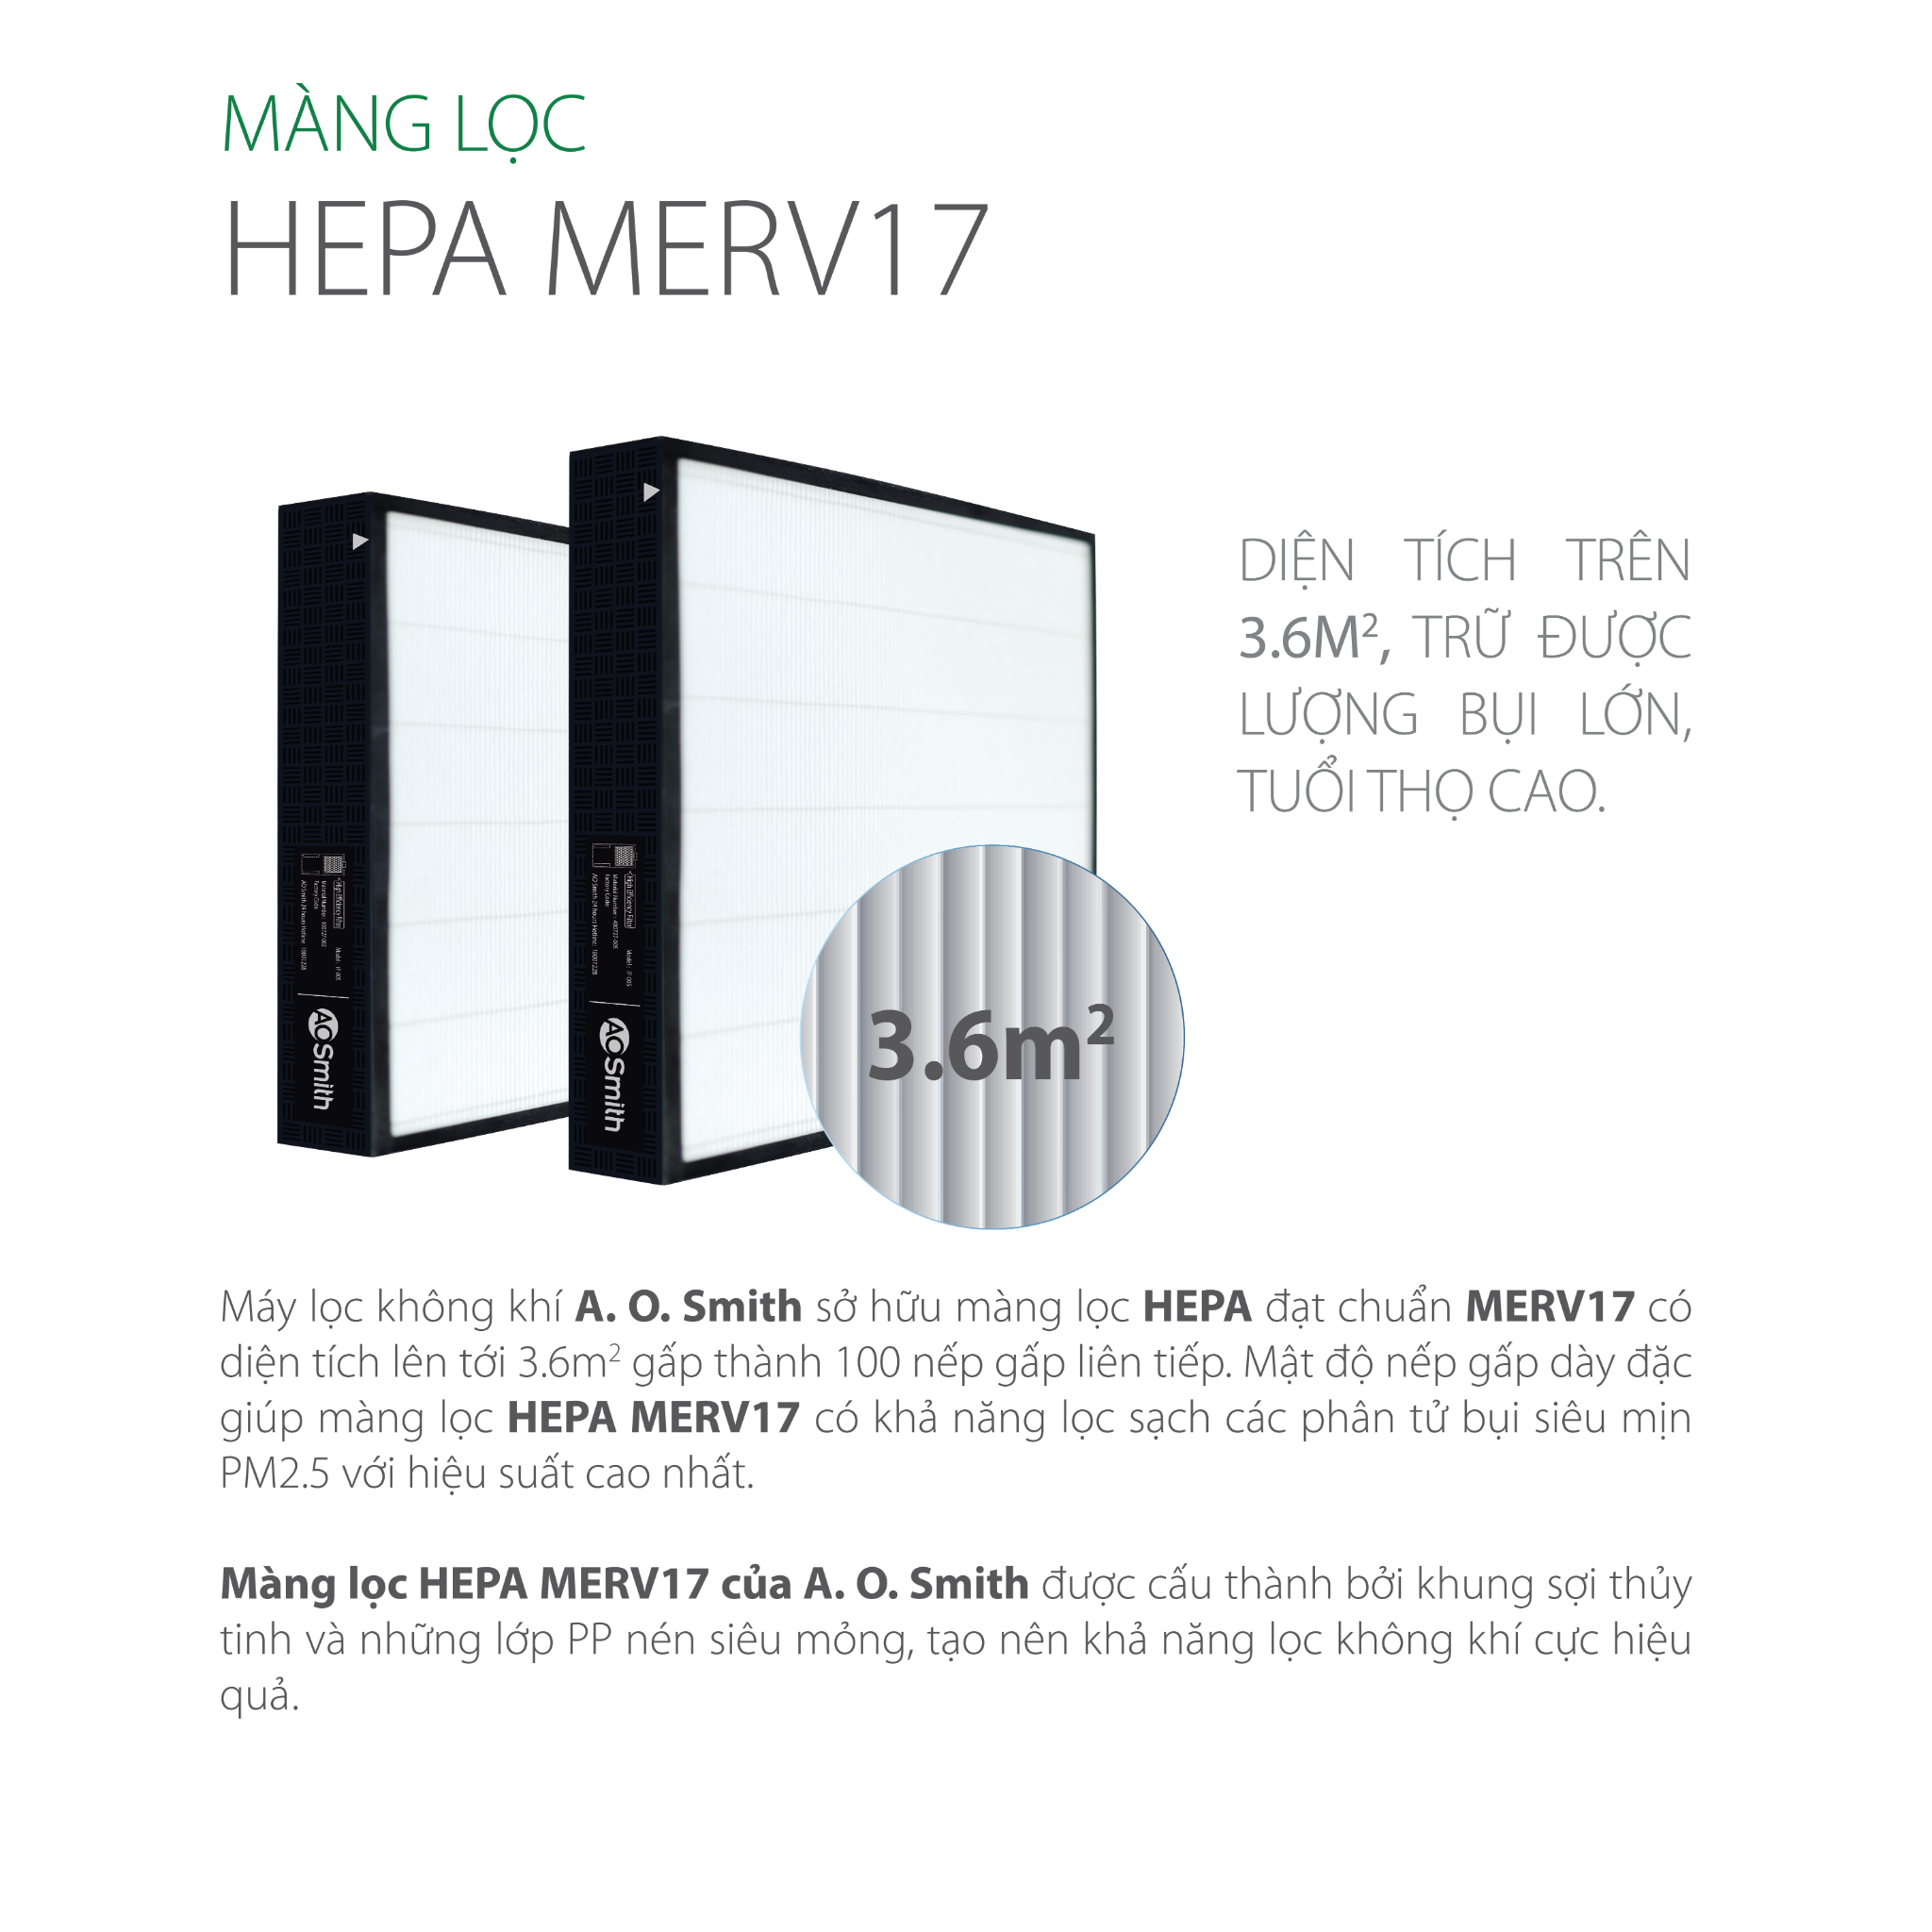 Màng lọc Hepa MERV17 trữ được lượng bụi lớn